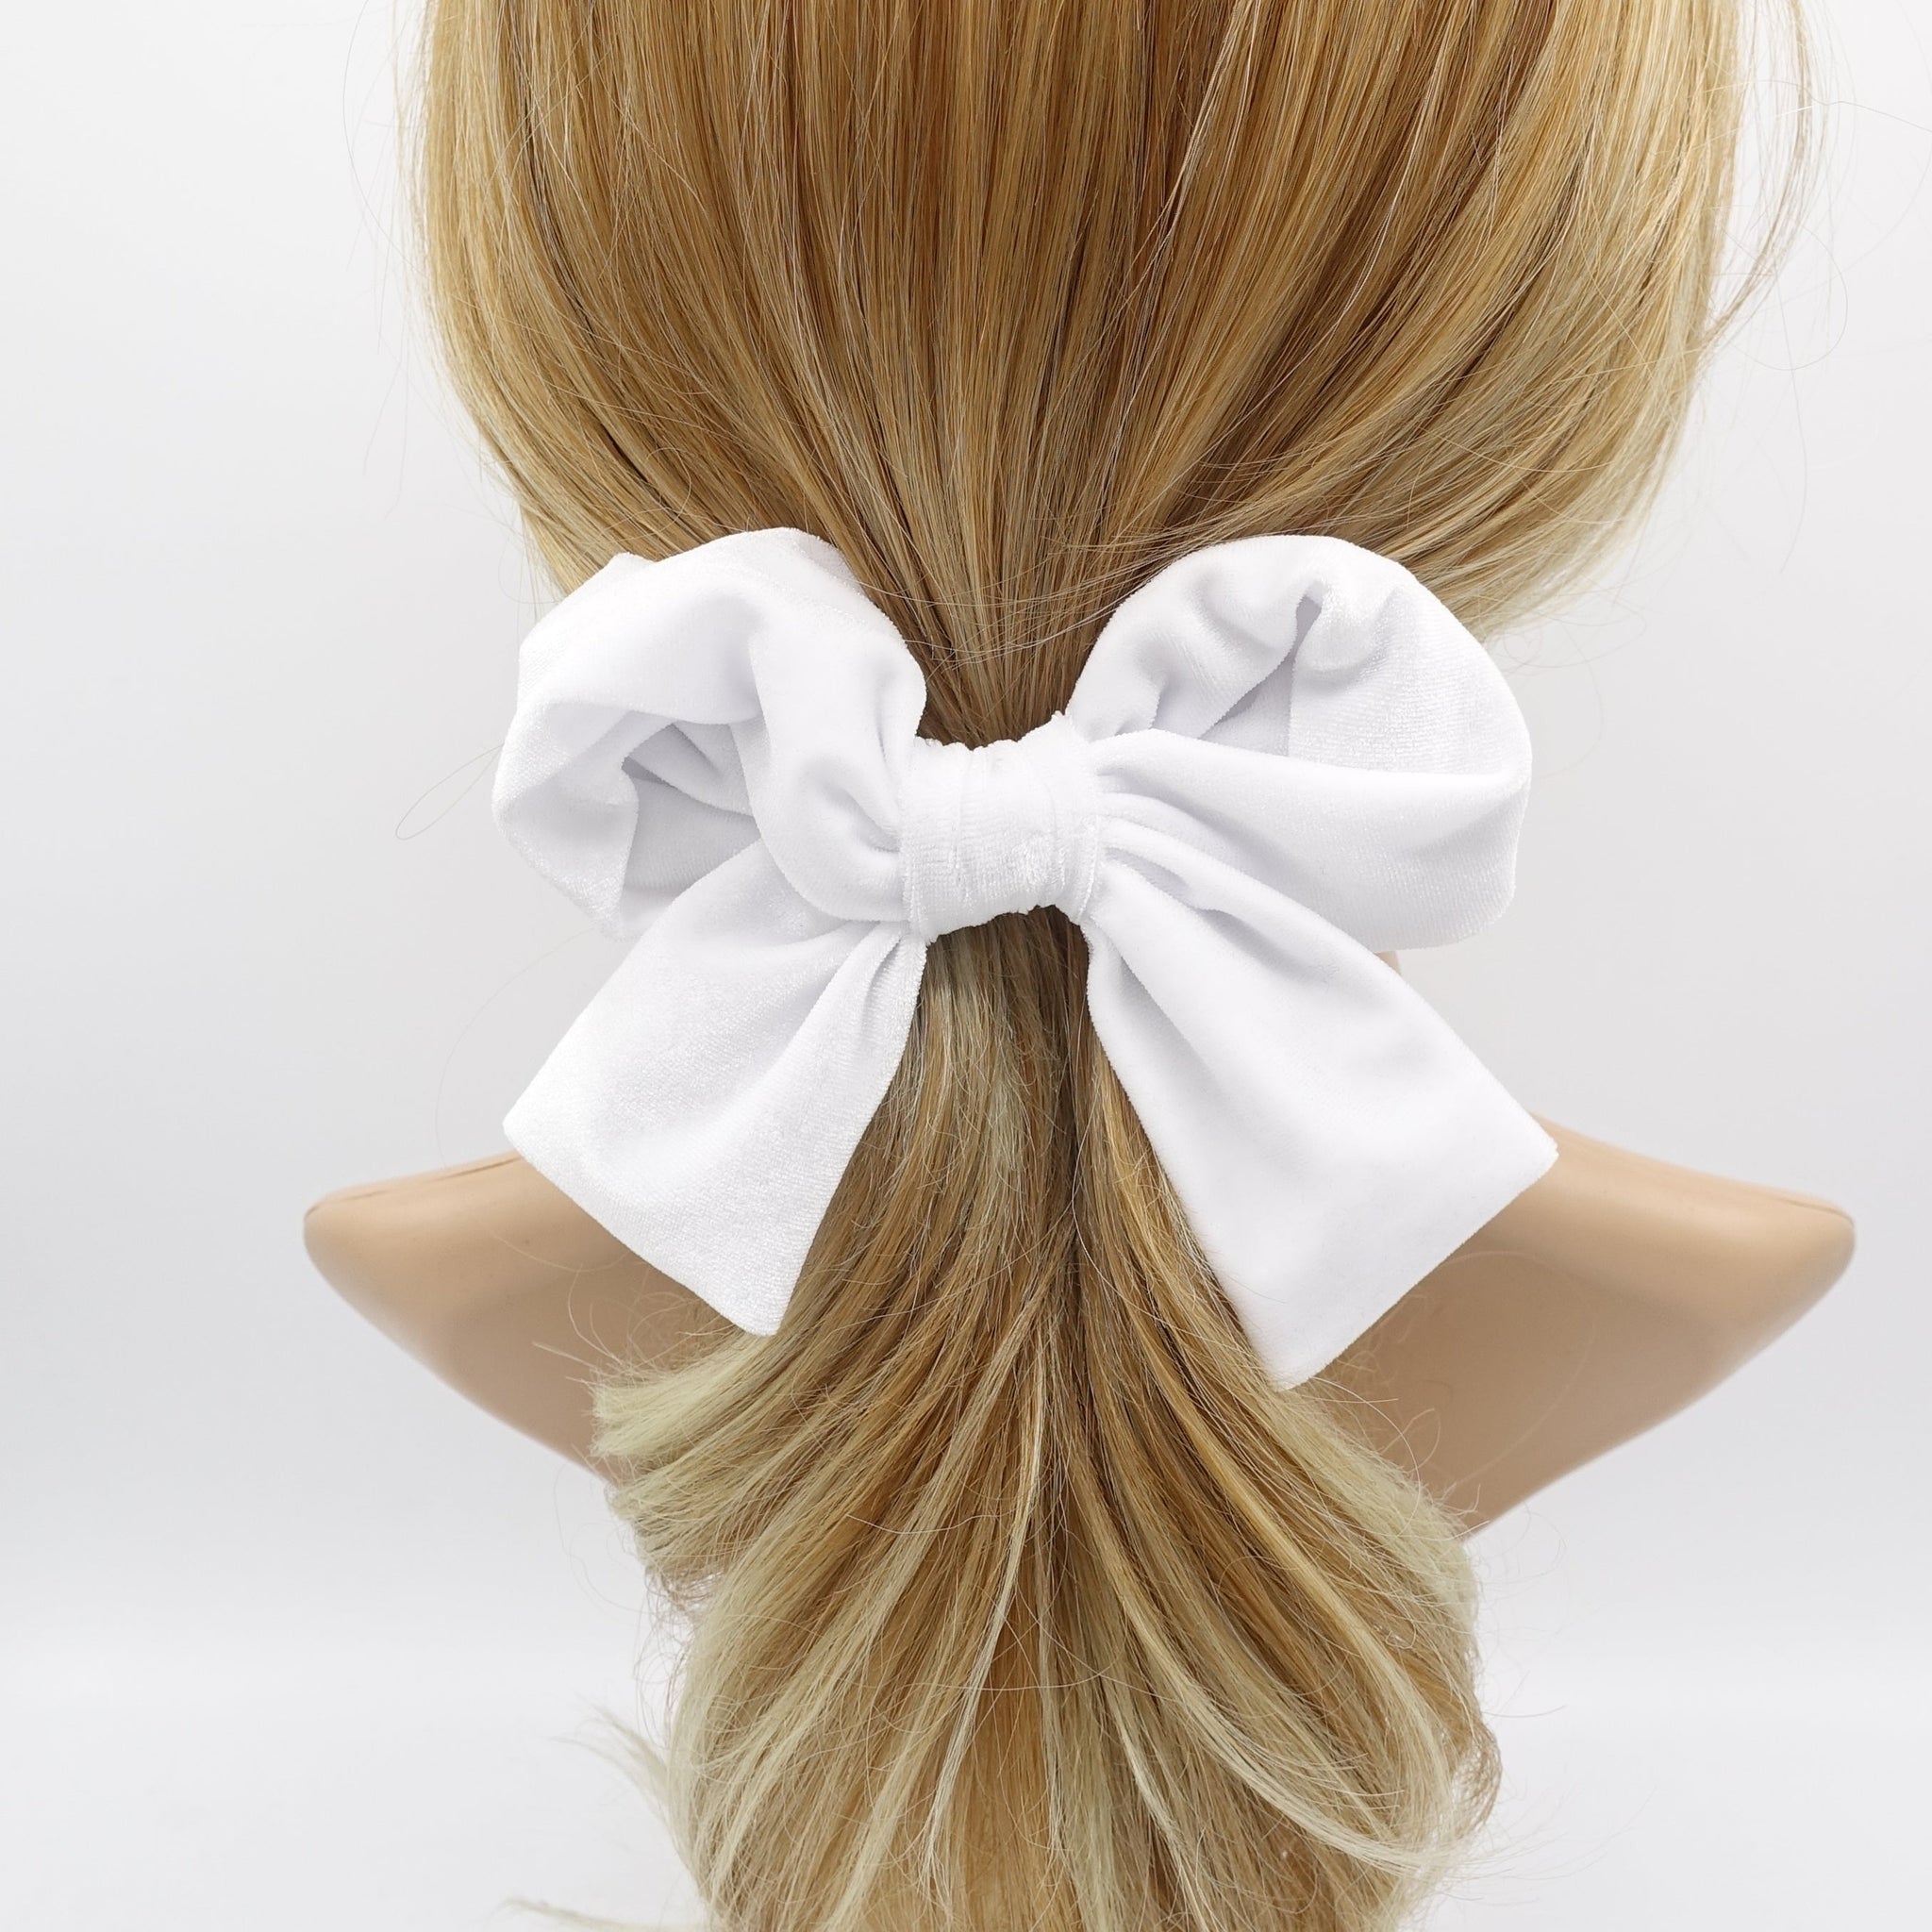 veryshine.com Barrette (Bow) White velvet wired bow hair accessory for women